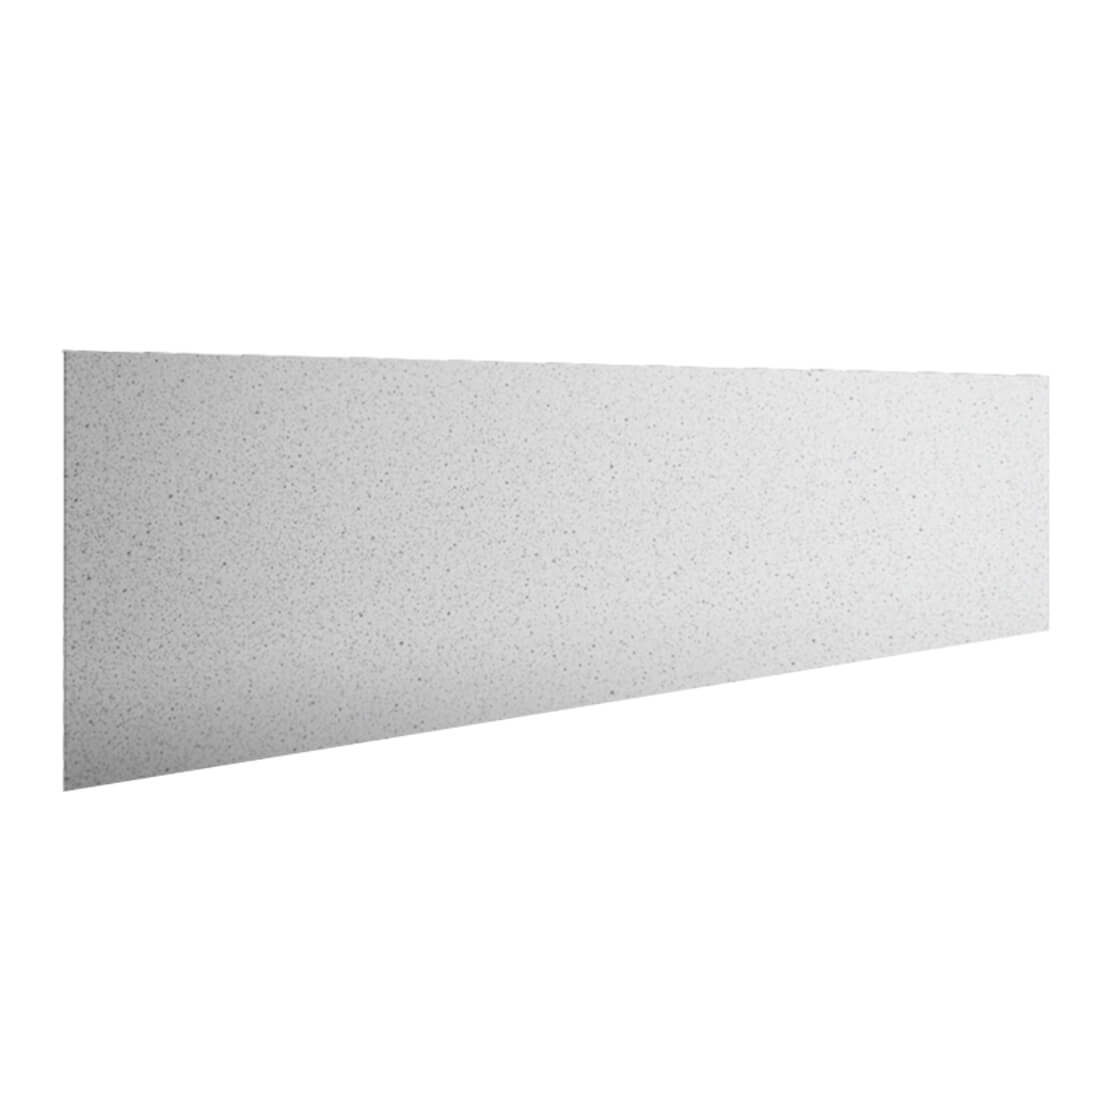 Стеновая панель Антарес 3000 мм